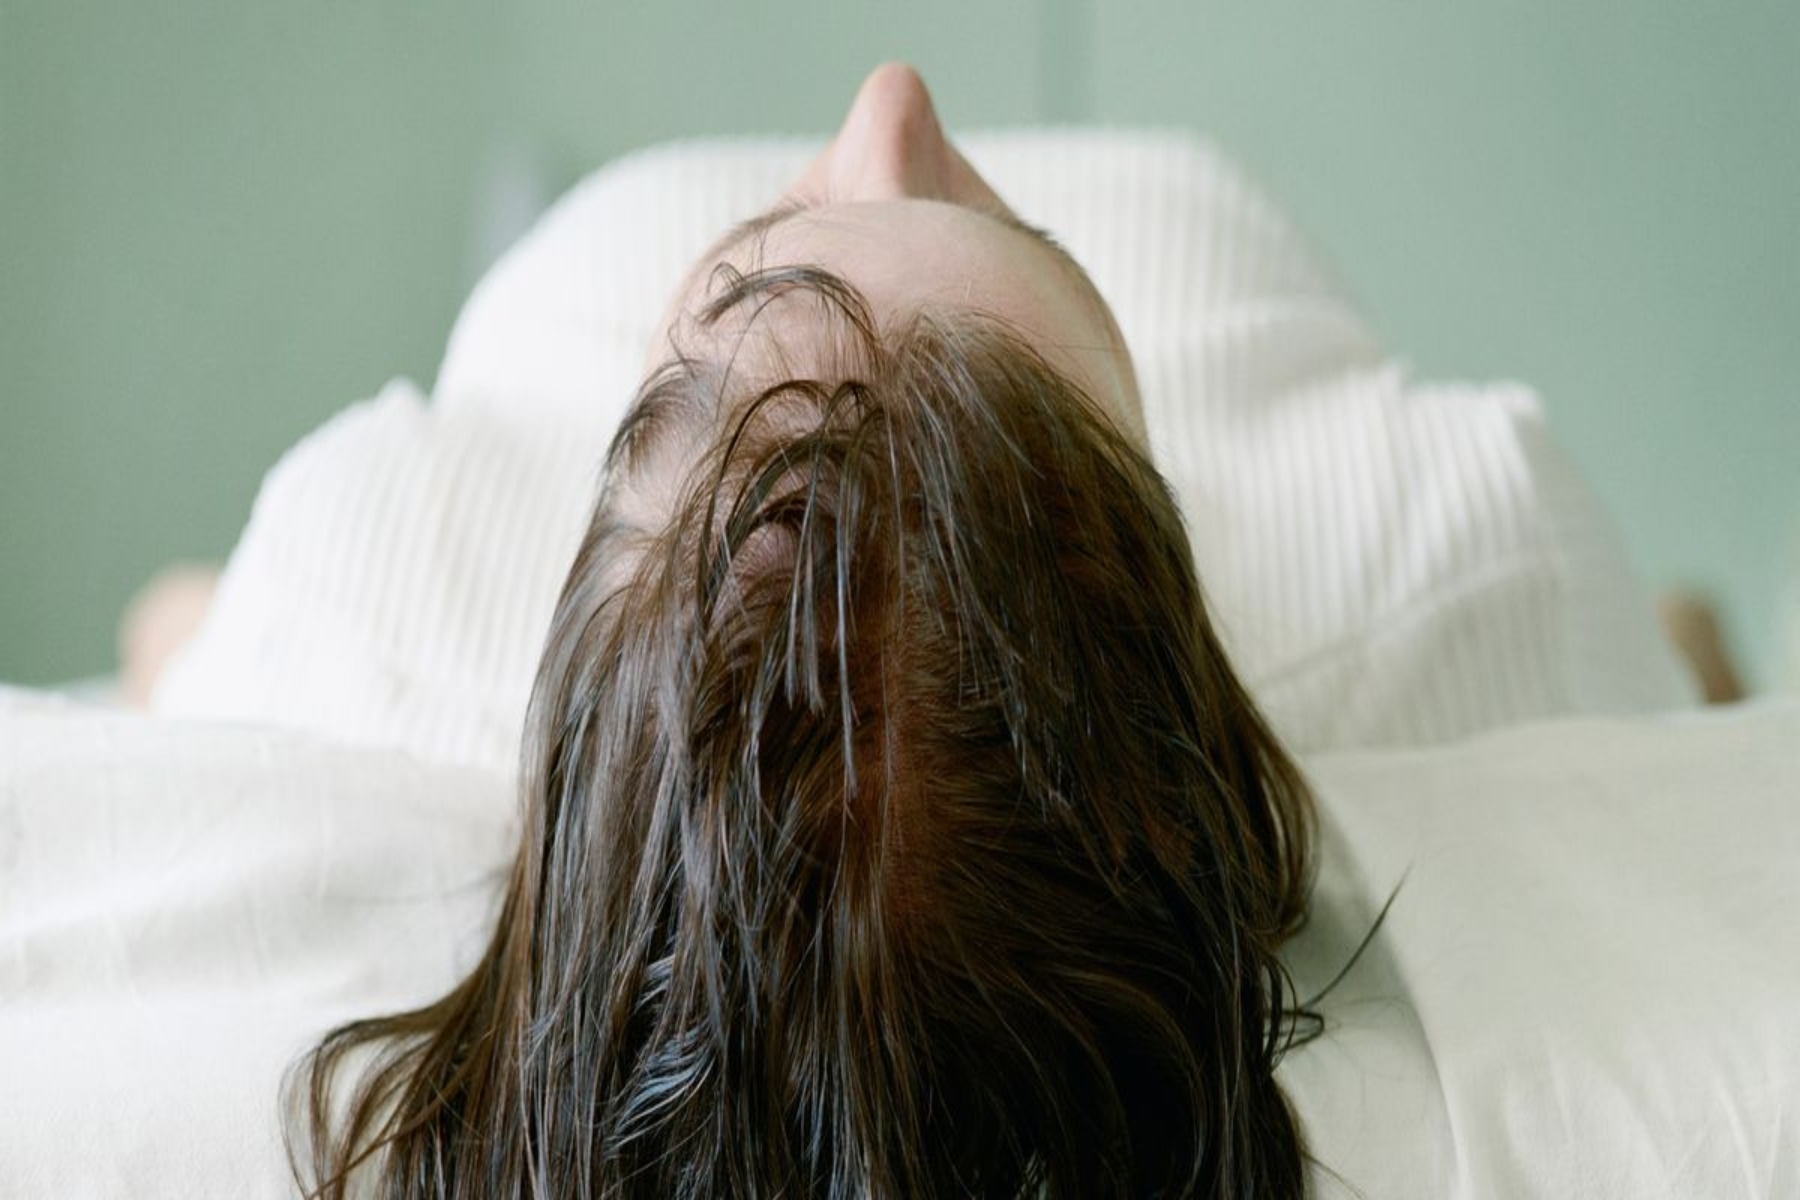 Βρεγμένα μαλλιά: Οι ειδικοί λένε ότι ο ύπνος με βρεγμένα μαλλιά μπορεί να προκαλέσει βακτήρια